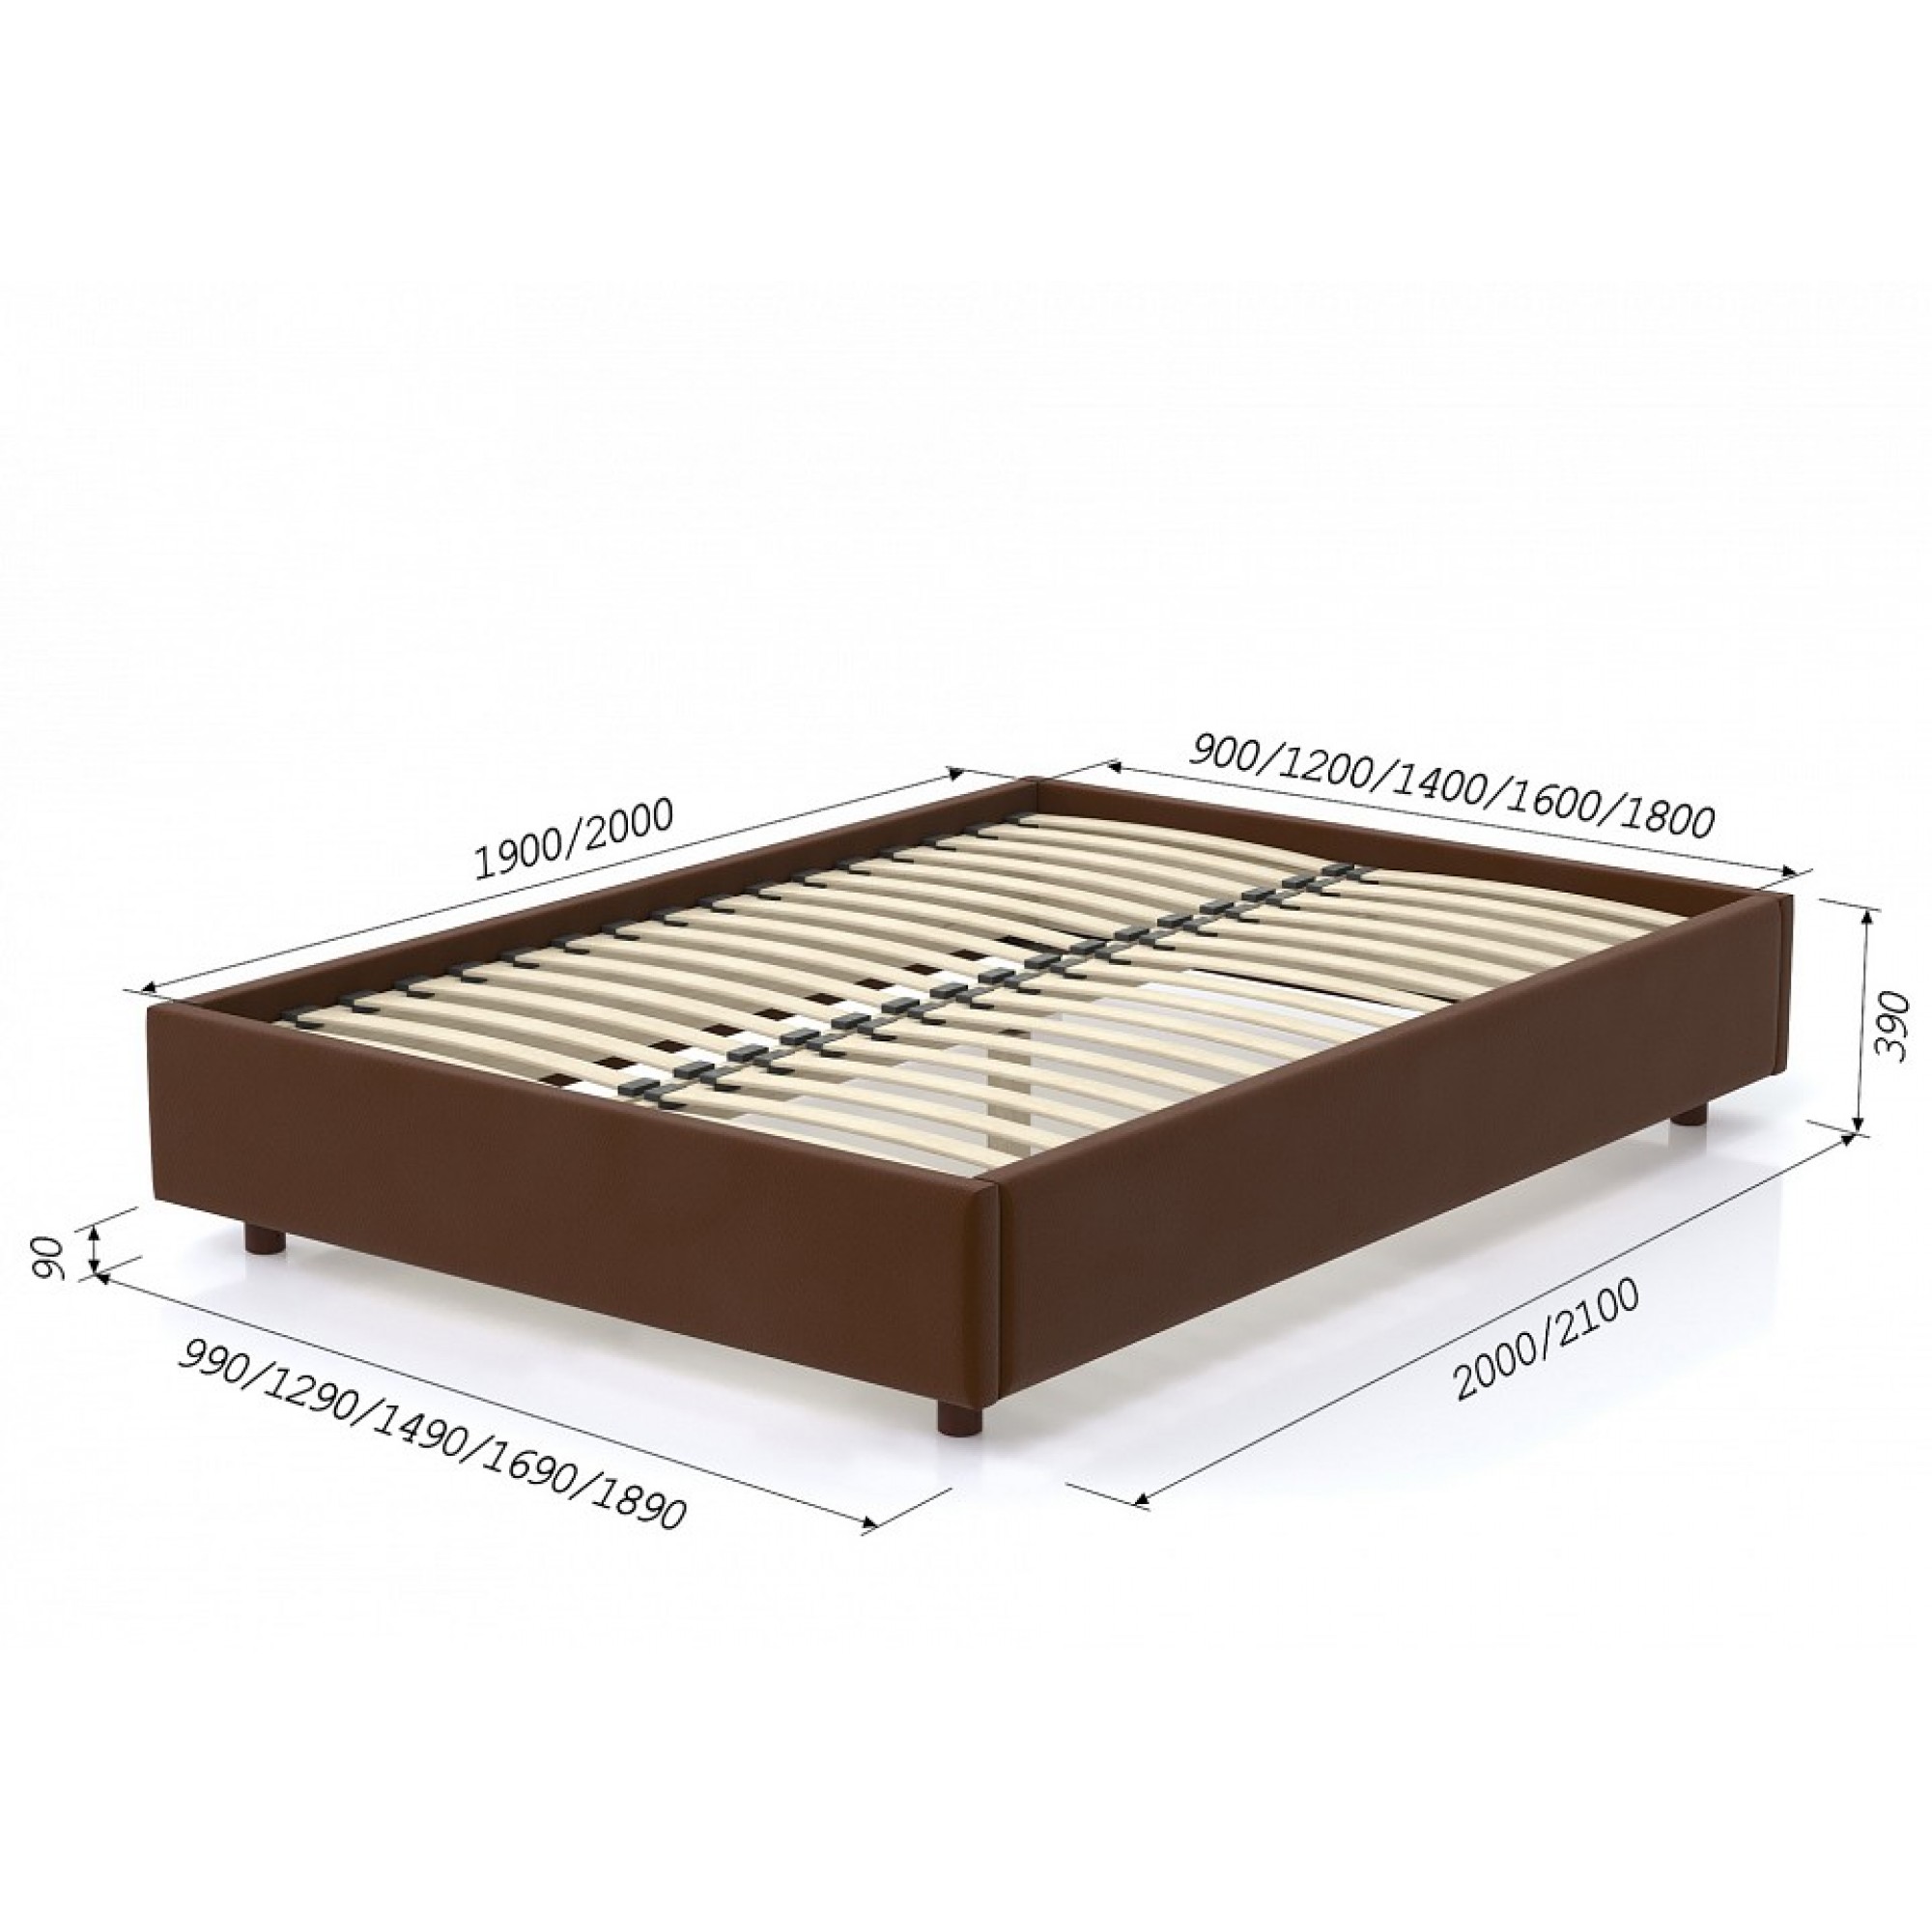 Кровать двуспальная SleepBox    AND_689set2503